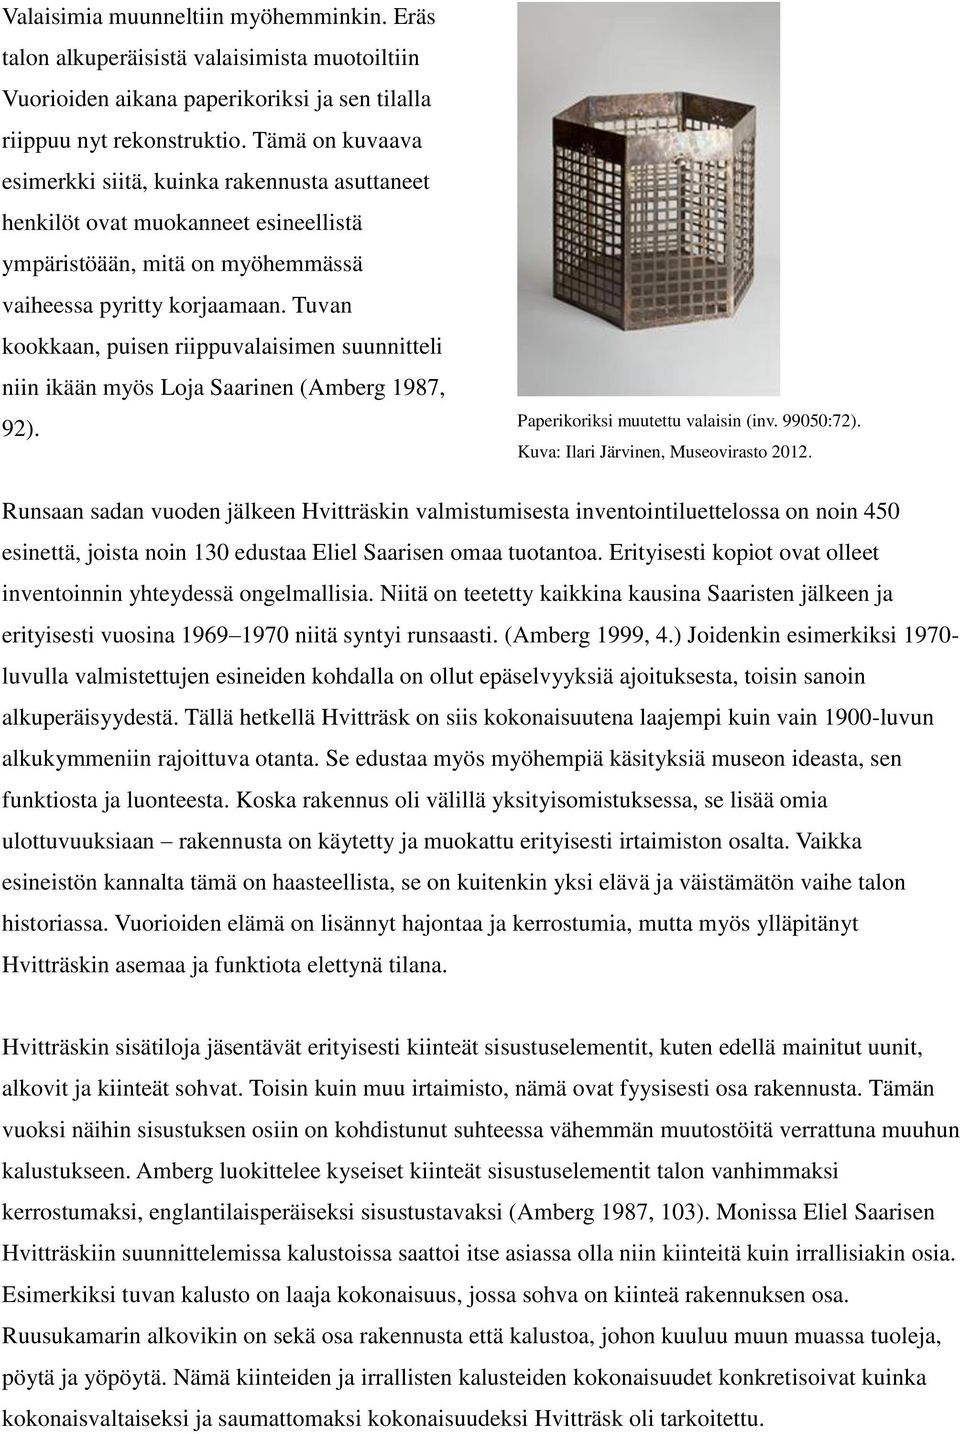 Tuvan kookkaan, puisen riippuvalaisimen suunnitteli niin ikään myös Loja Saarinen (Amberg 1987, 92). Paperikoriksi muutettu valaisin (inv. 99050:72). Kuva: Ilari Järvinen, Museovirasto 2012.